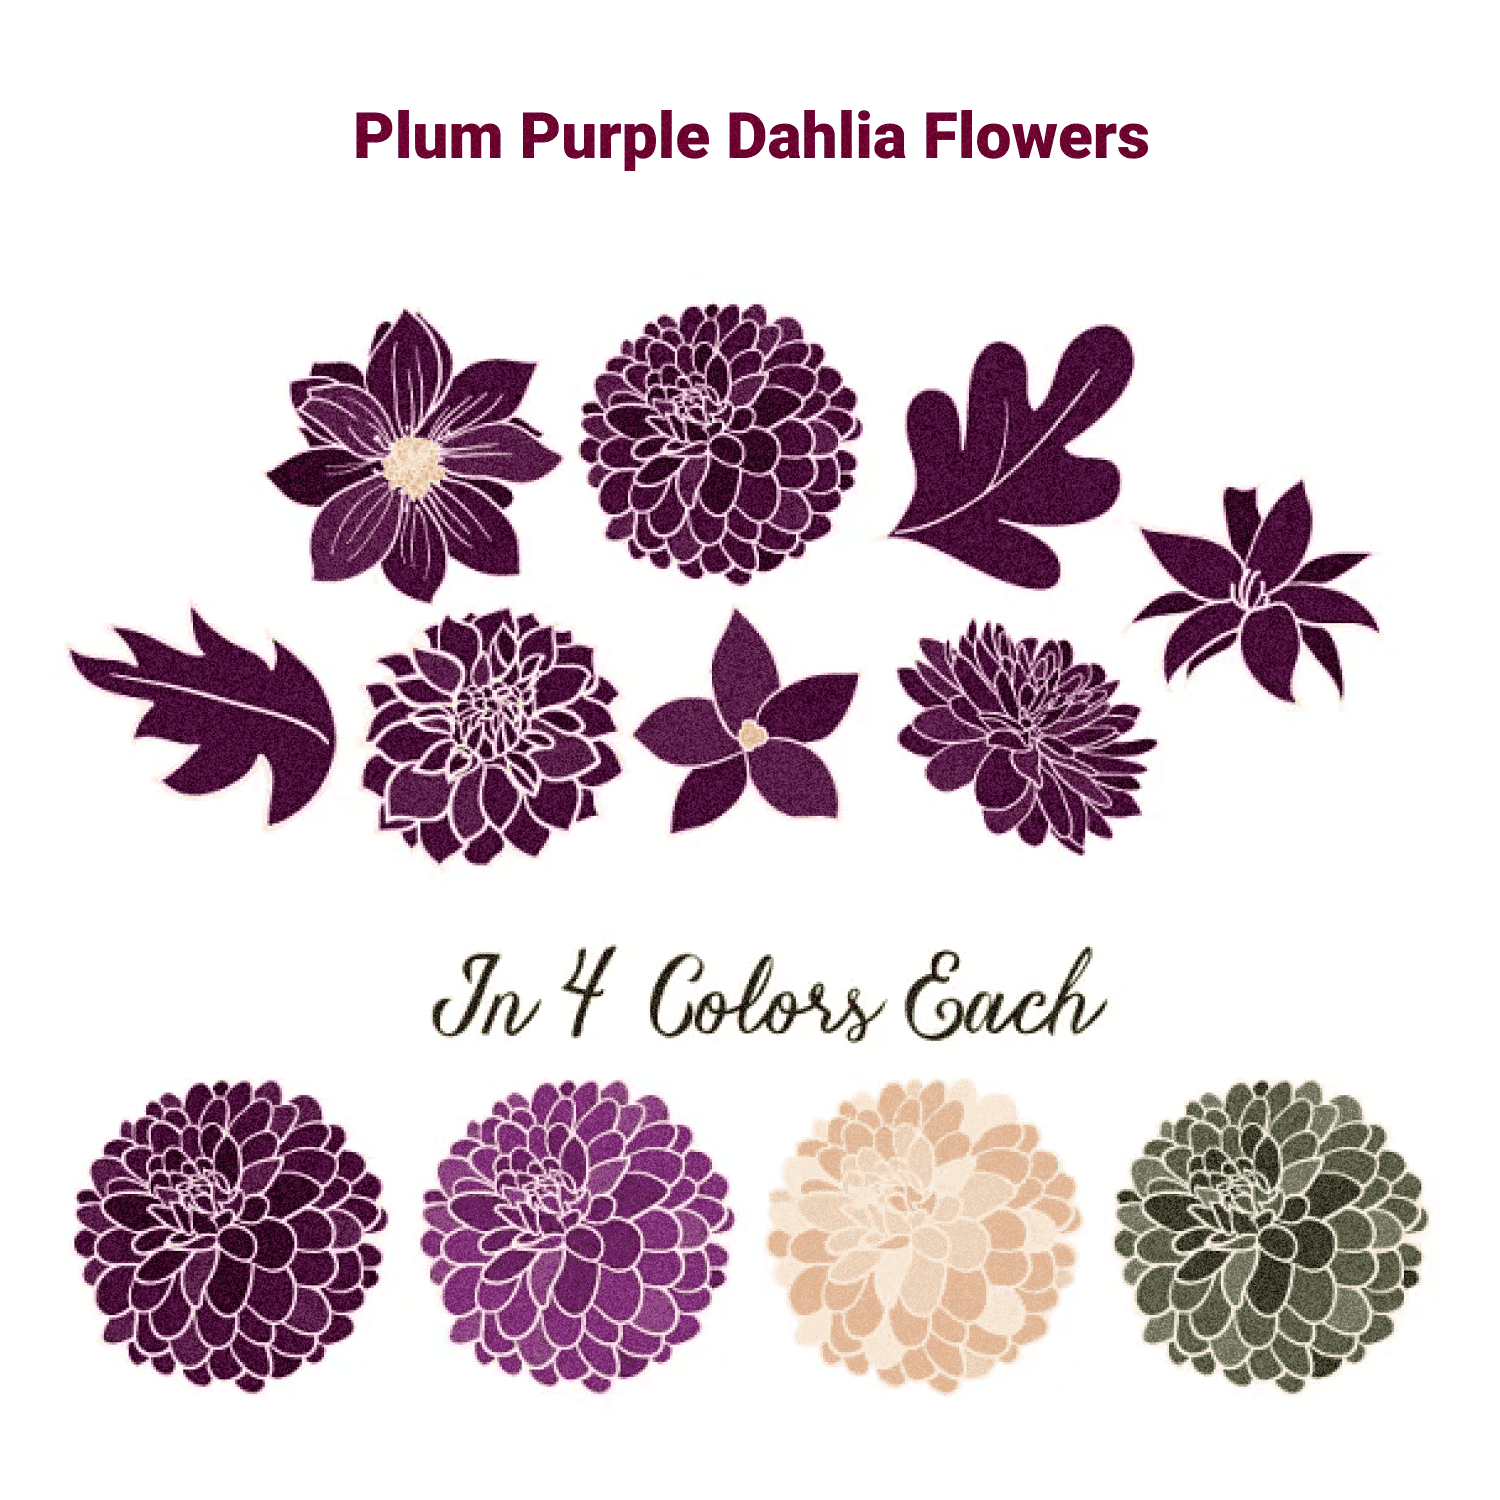 Plum Purple Dahlia Flowers - Preview Picture.